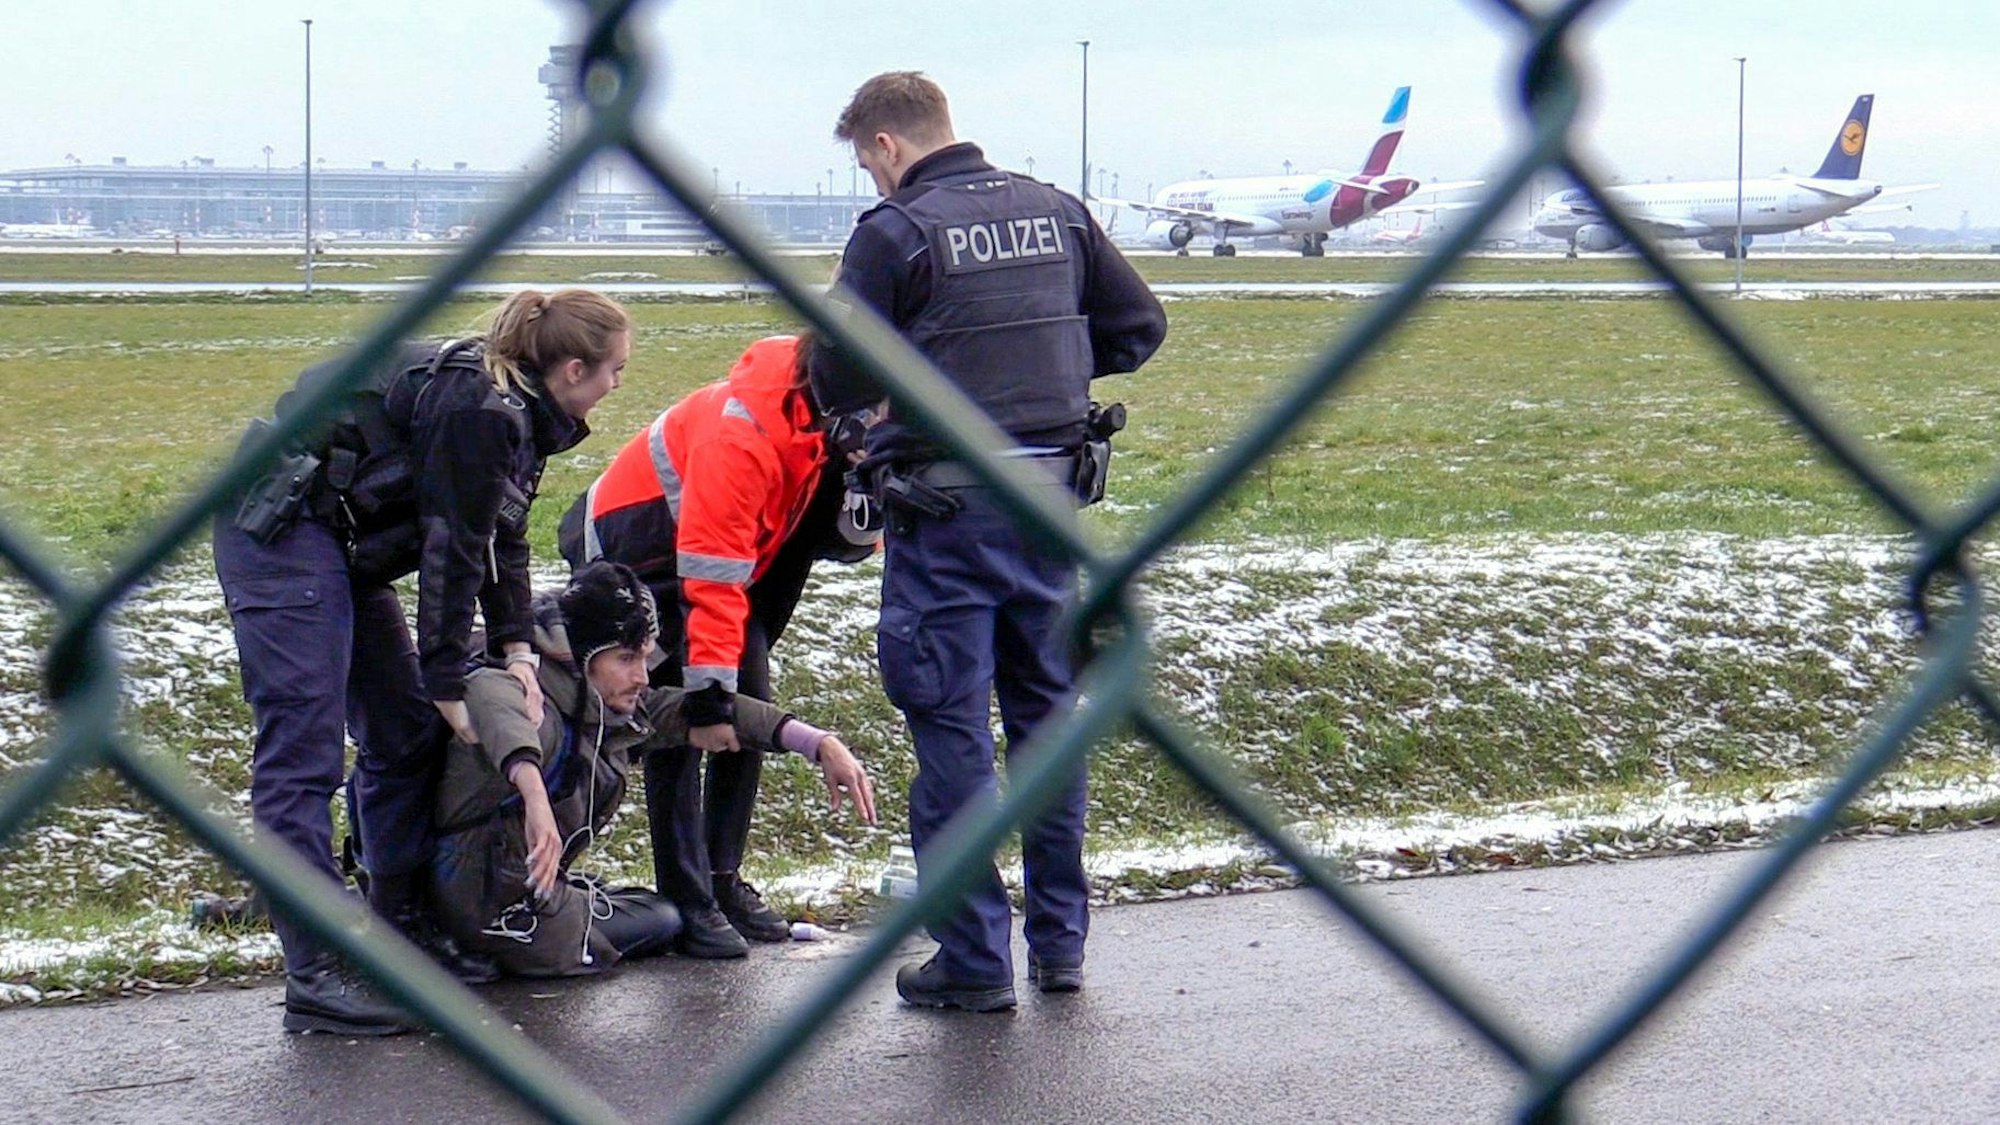 Eine Polizistin und ein Mitarbeiter des Berliner Flughafens versuchen, einen am Boden sitzenden Klimaaktivisten anzuheben. Ein zweiter Polizist steht vor der Gruppe. Im Hintergrund sind zwei Flugzeuge und das Flughafengebäude zu sehen, im Bildvordergrund ein Maschendrahtzaun.